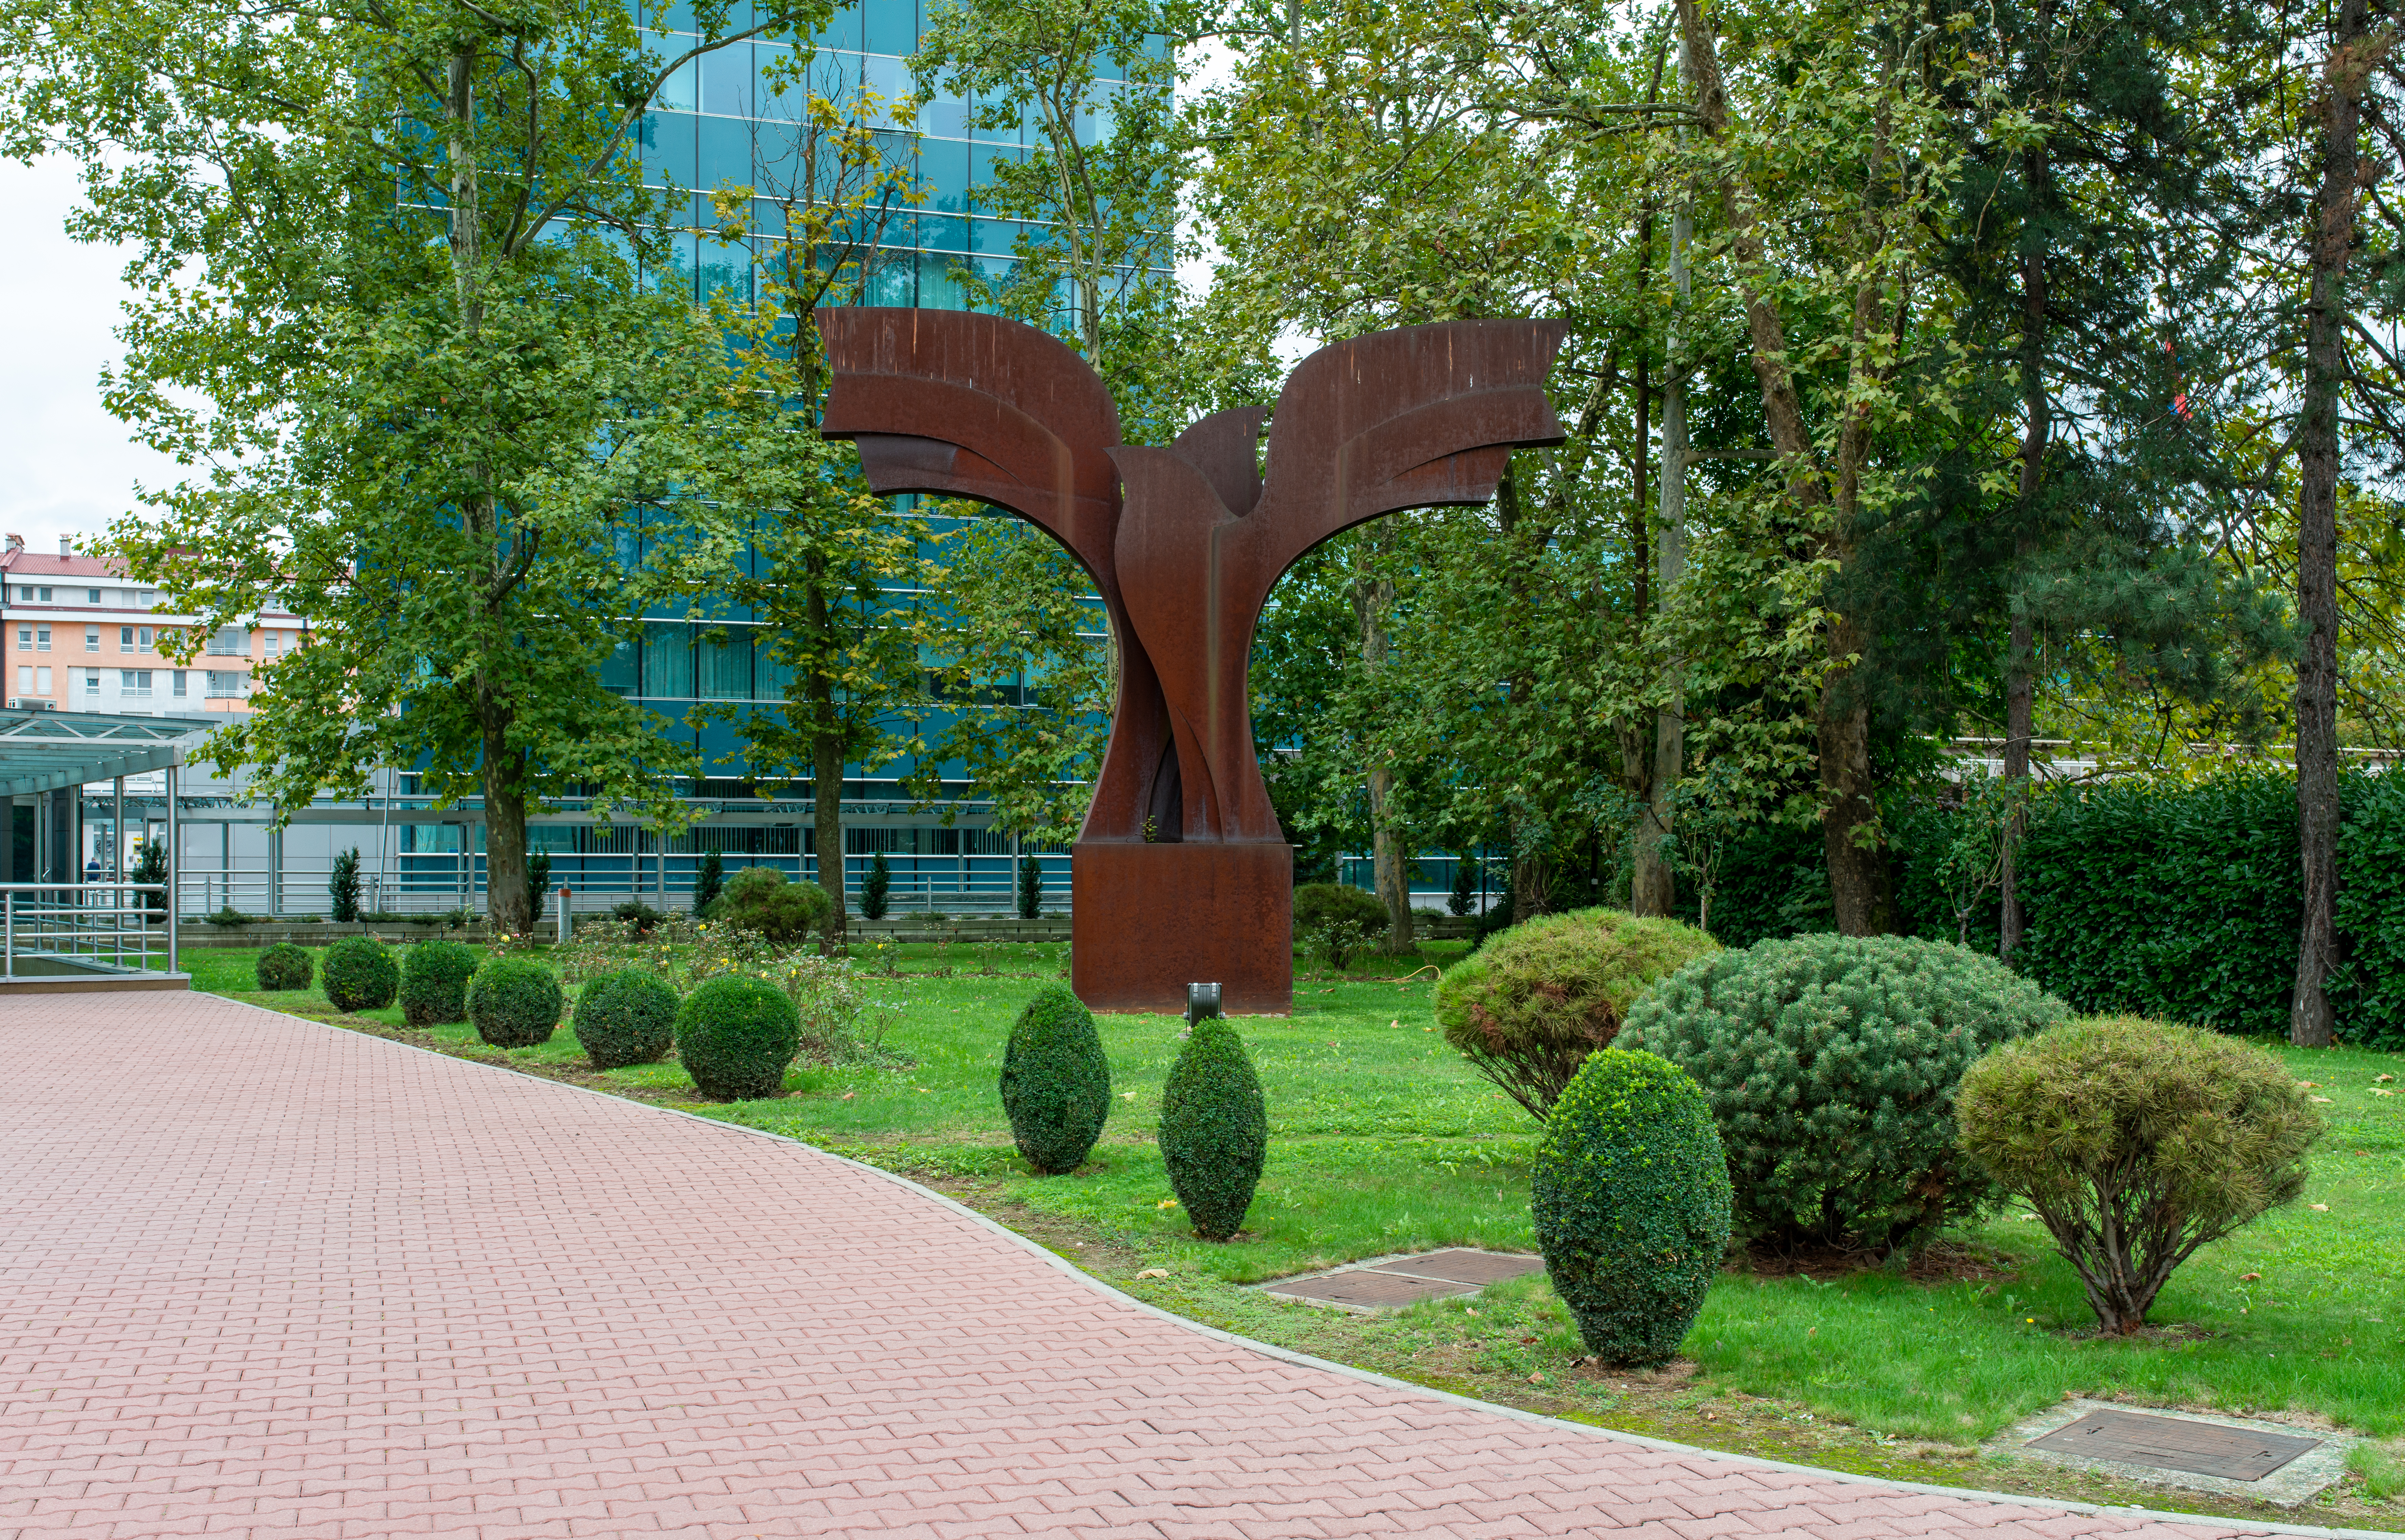 Skulptur mit dem Namen „Mir“ (Frieden) des serbischen Künstlers Milivoje Unković am Platz der Republik in Banja Luka